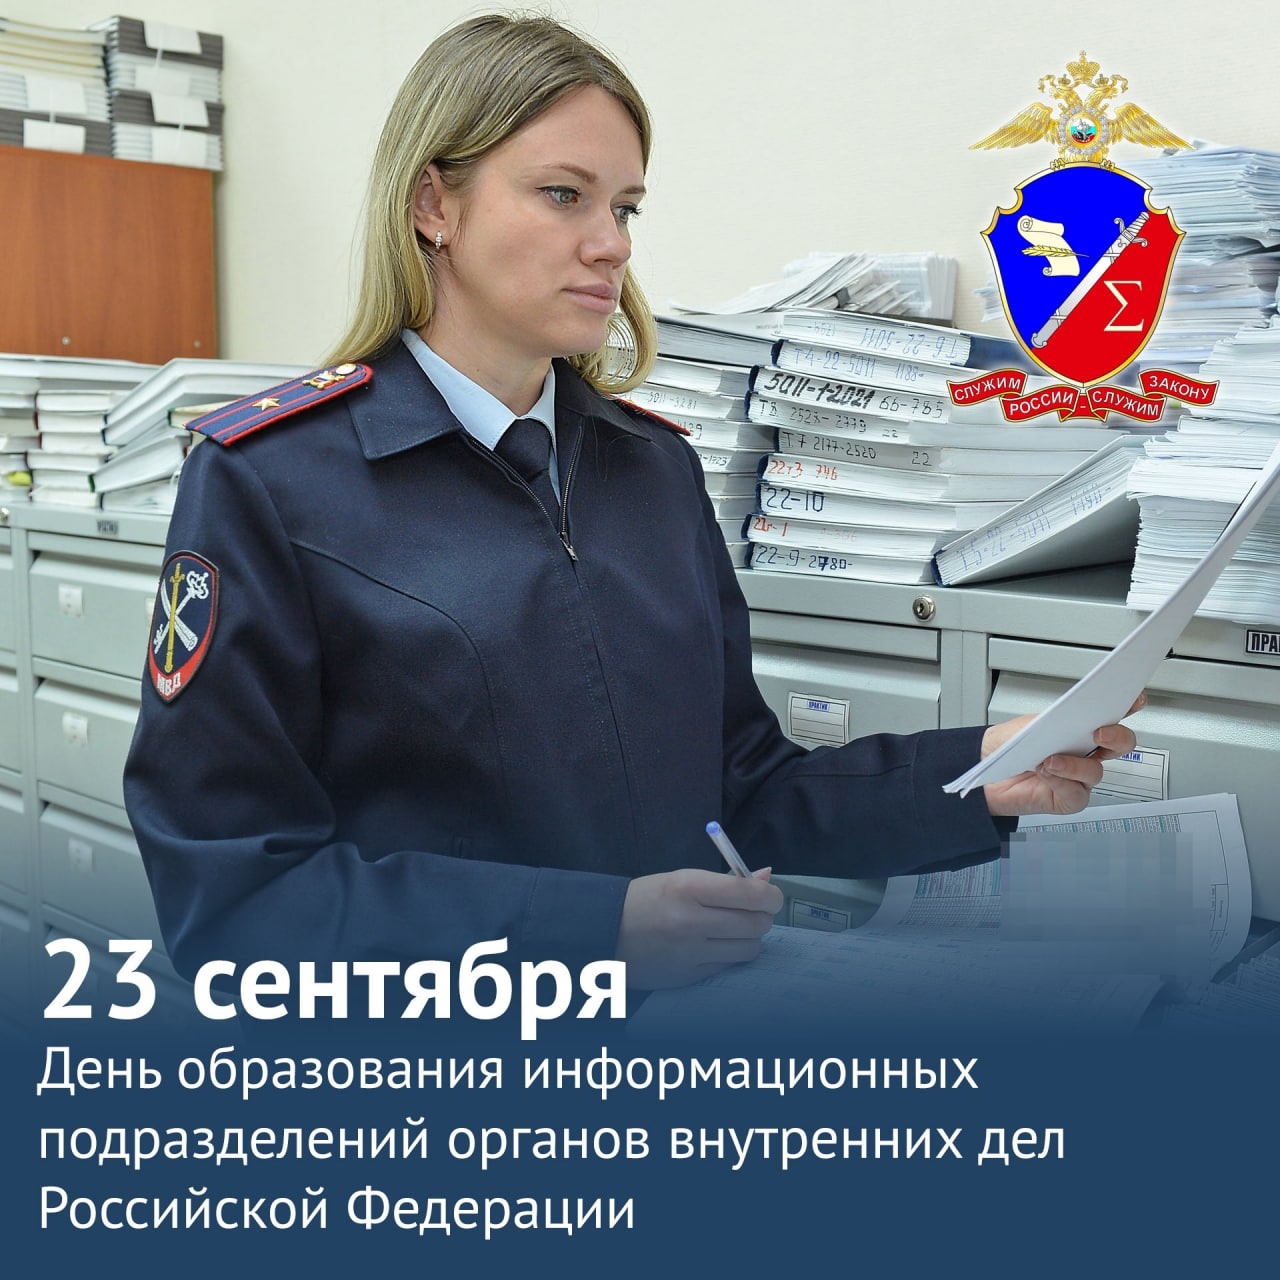 23 сентября День образования информационных подразделений органов внутренних дел Российской Федерации